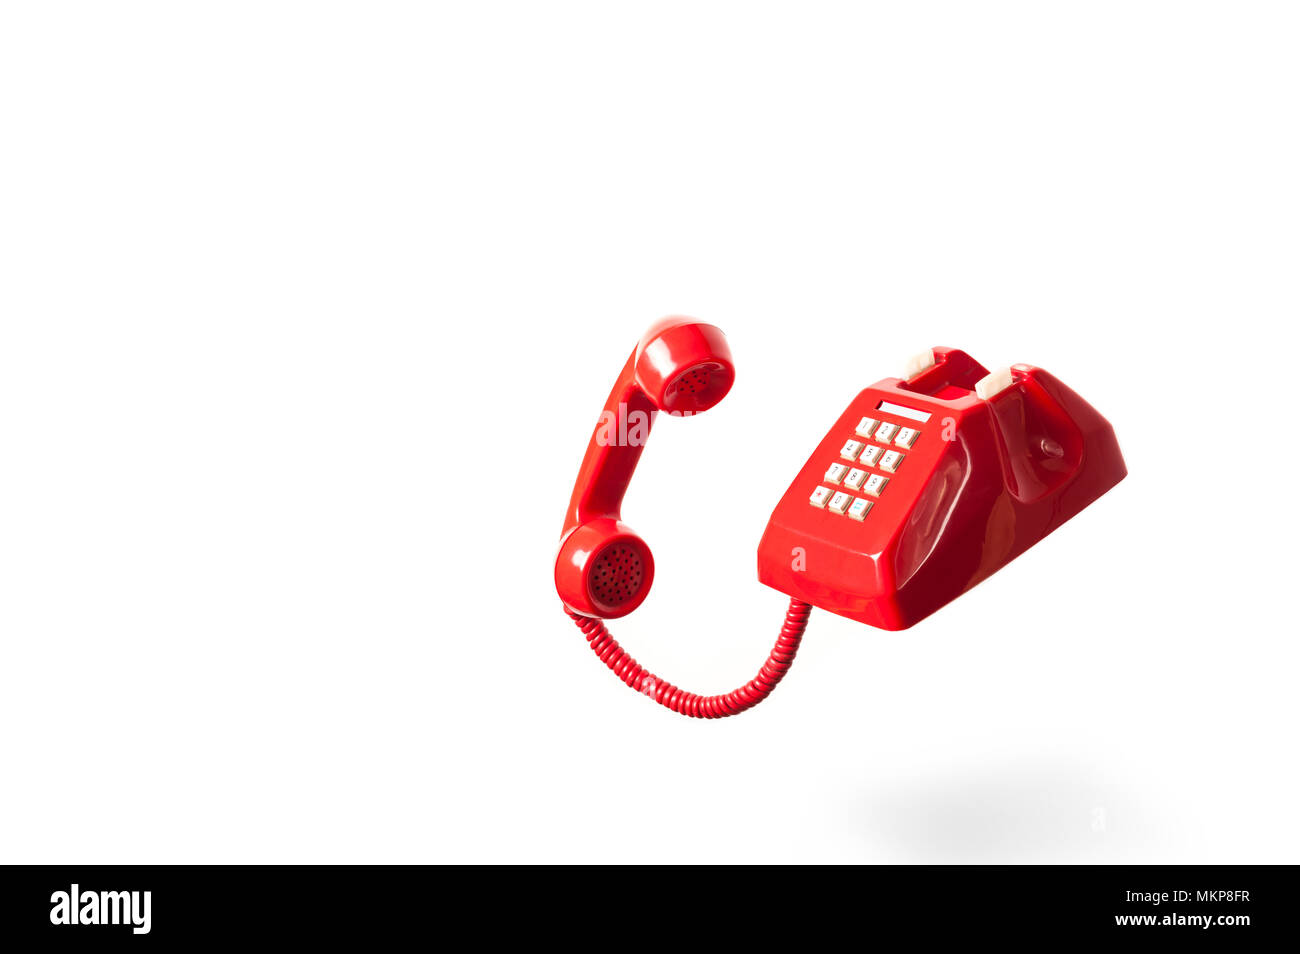 Teléfono vintage rojo aislado sobre fondo blanco. Llamada en espera del teléfono rojo o cuelgue. Foto de stock